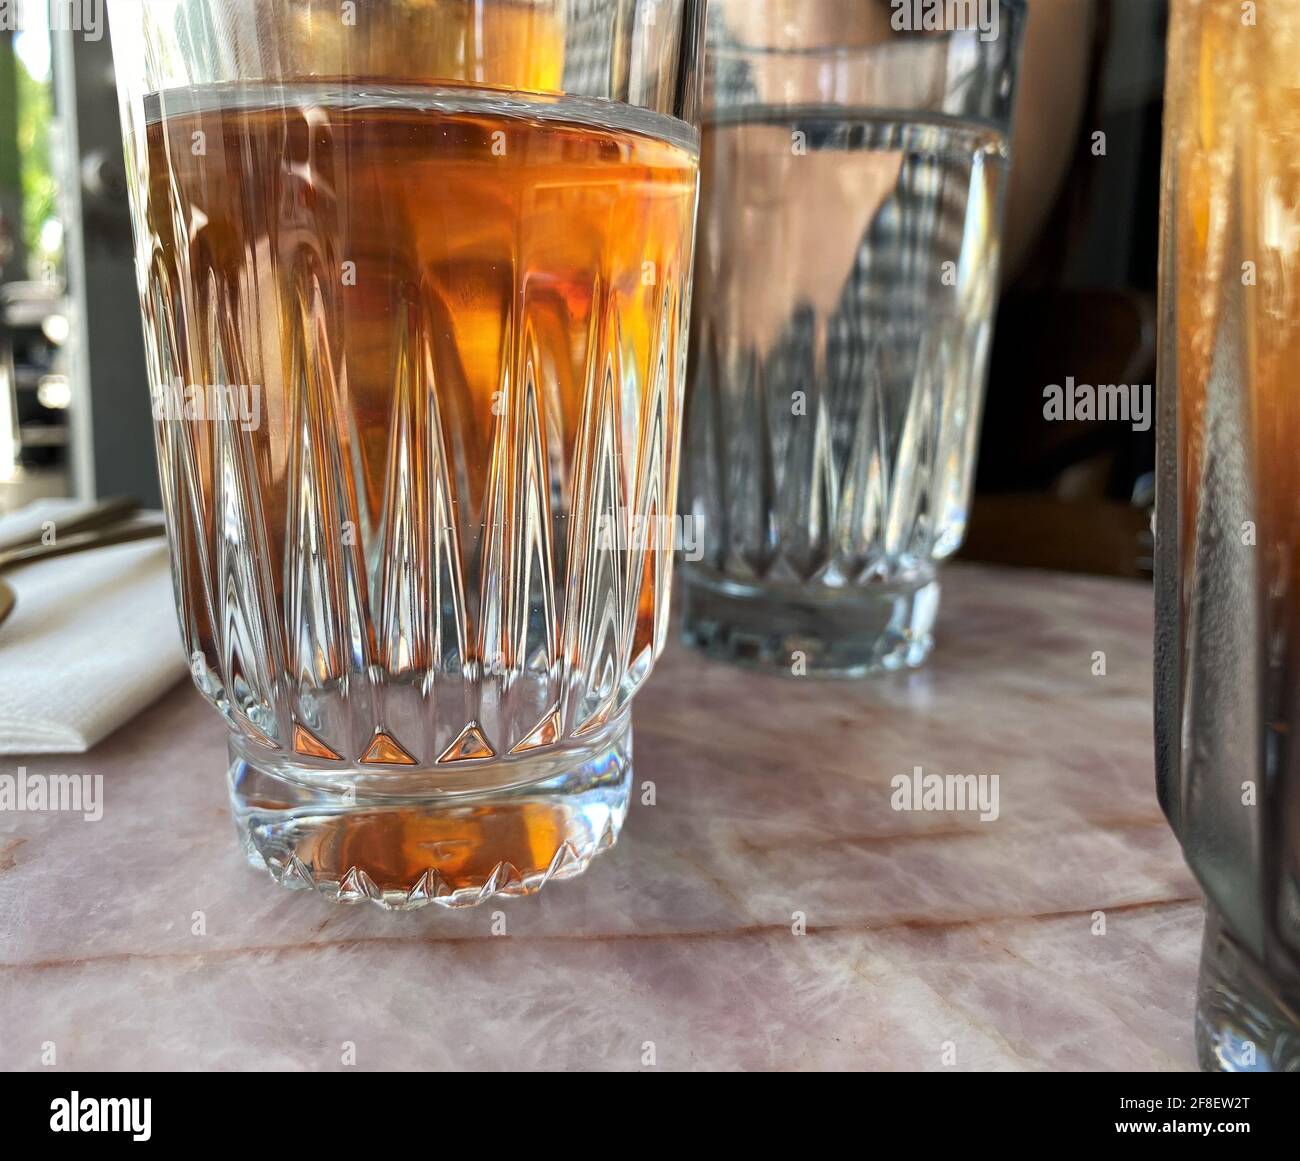 Détails de la tasse en verre avec thé glacé à l'intérieur, apprécié lors d'une chaude journée d'été. Banque D'Images